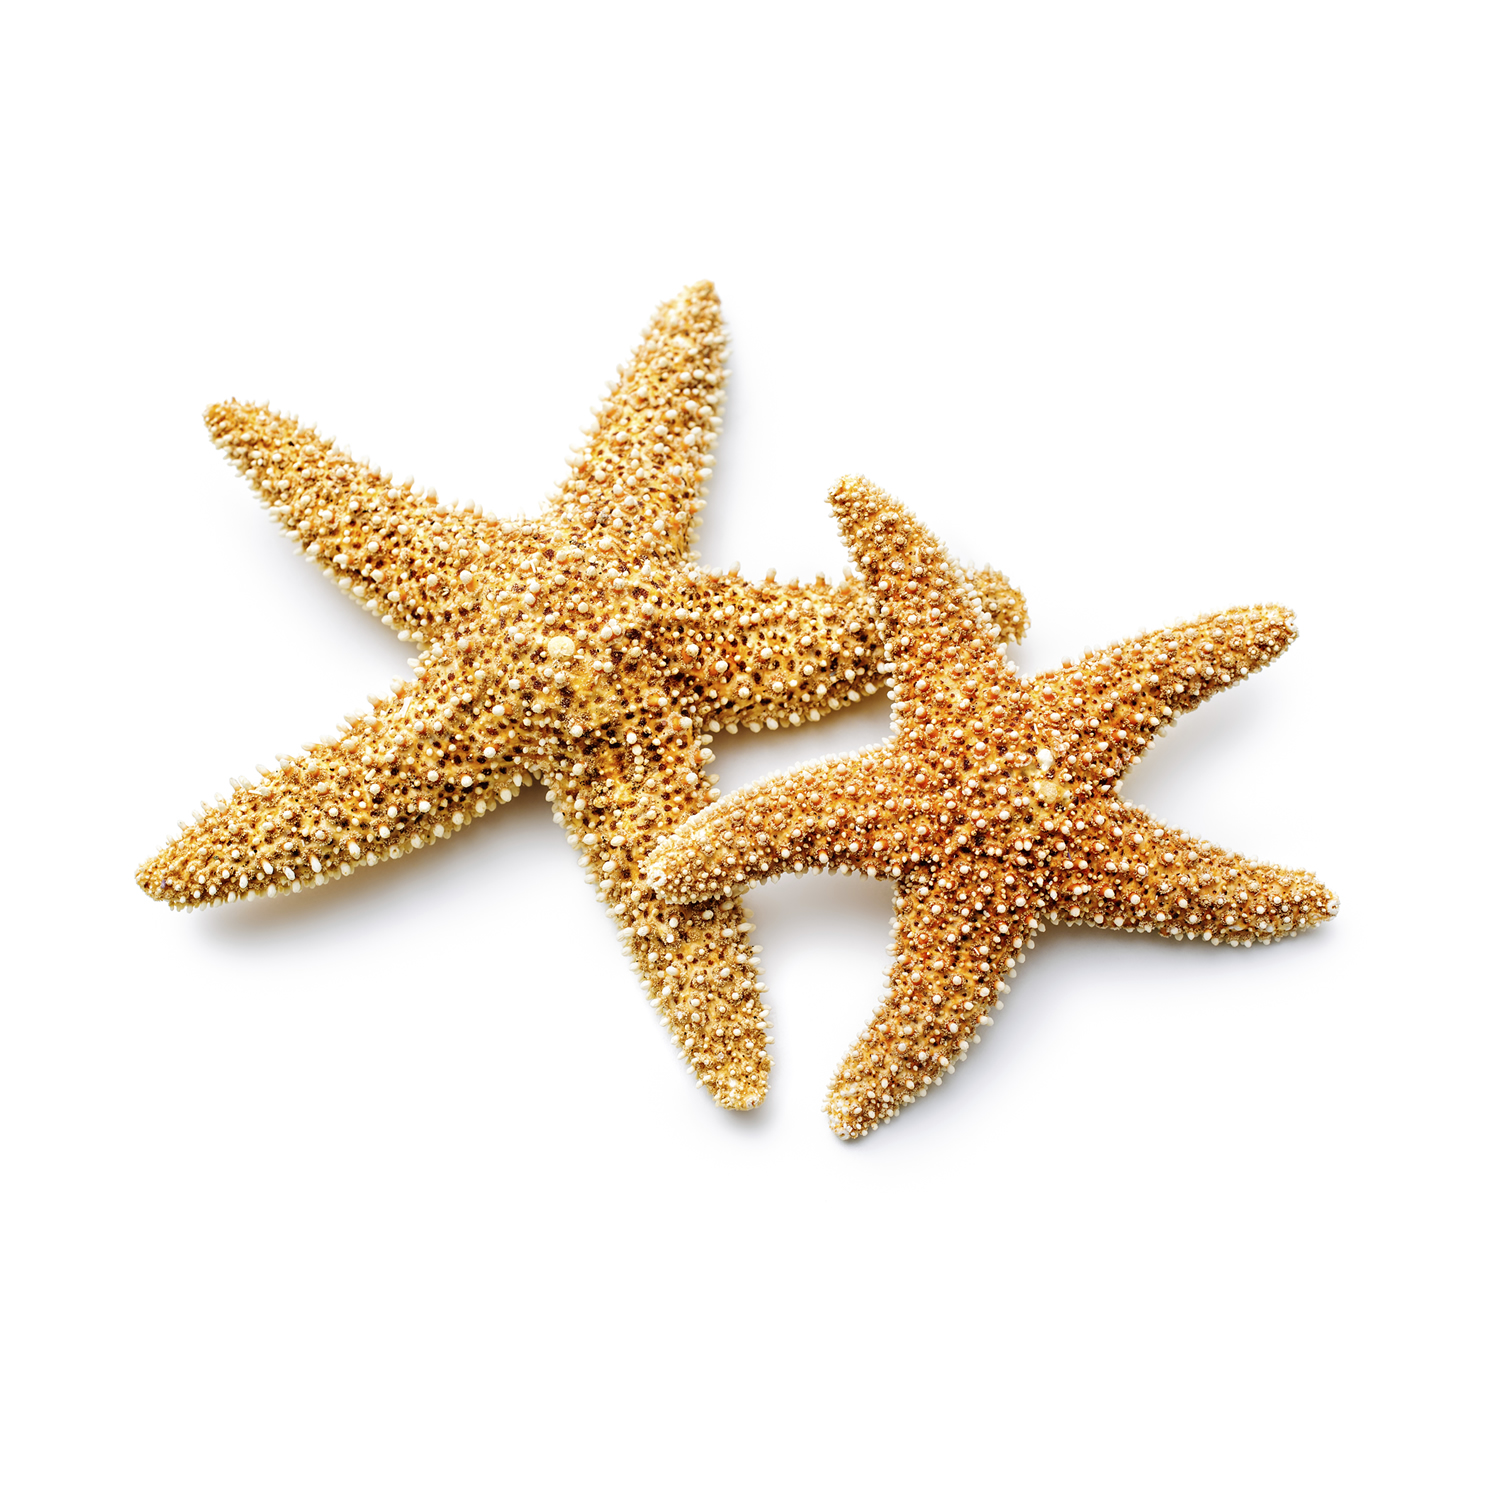 Starfish PNG - 15940